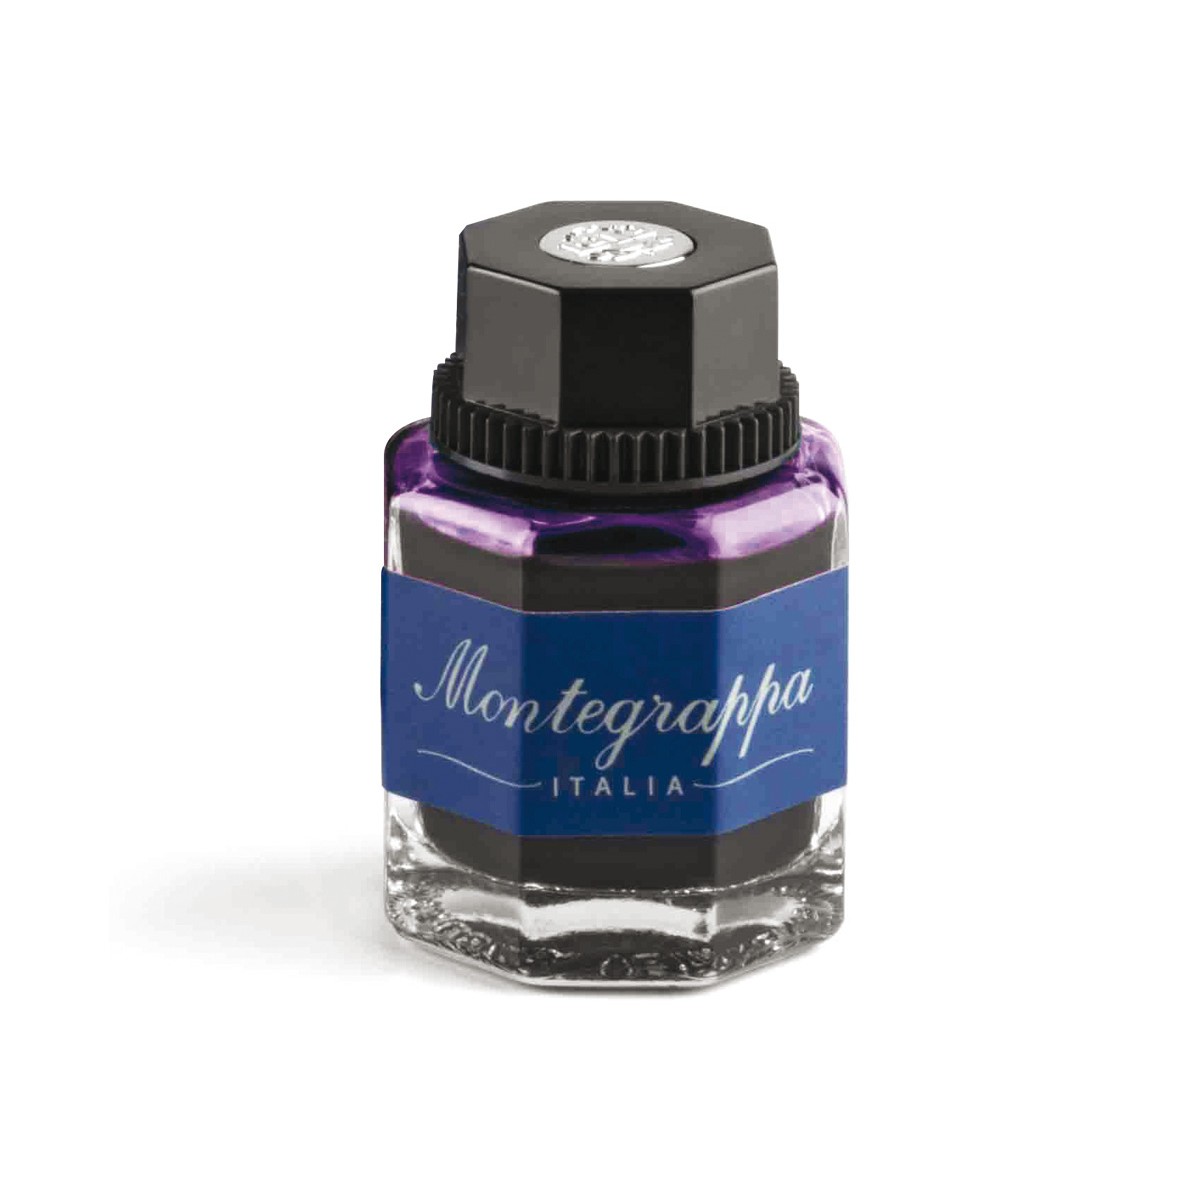 Motegrappa - Ink bottle - Violet